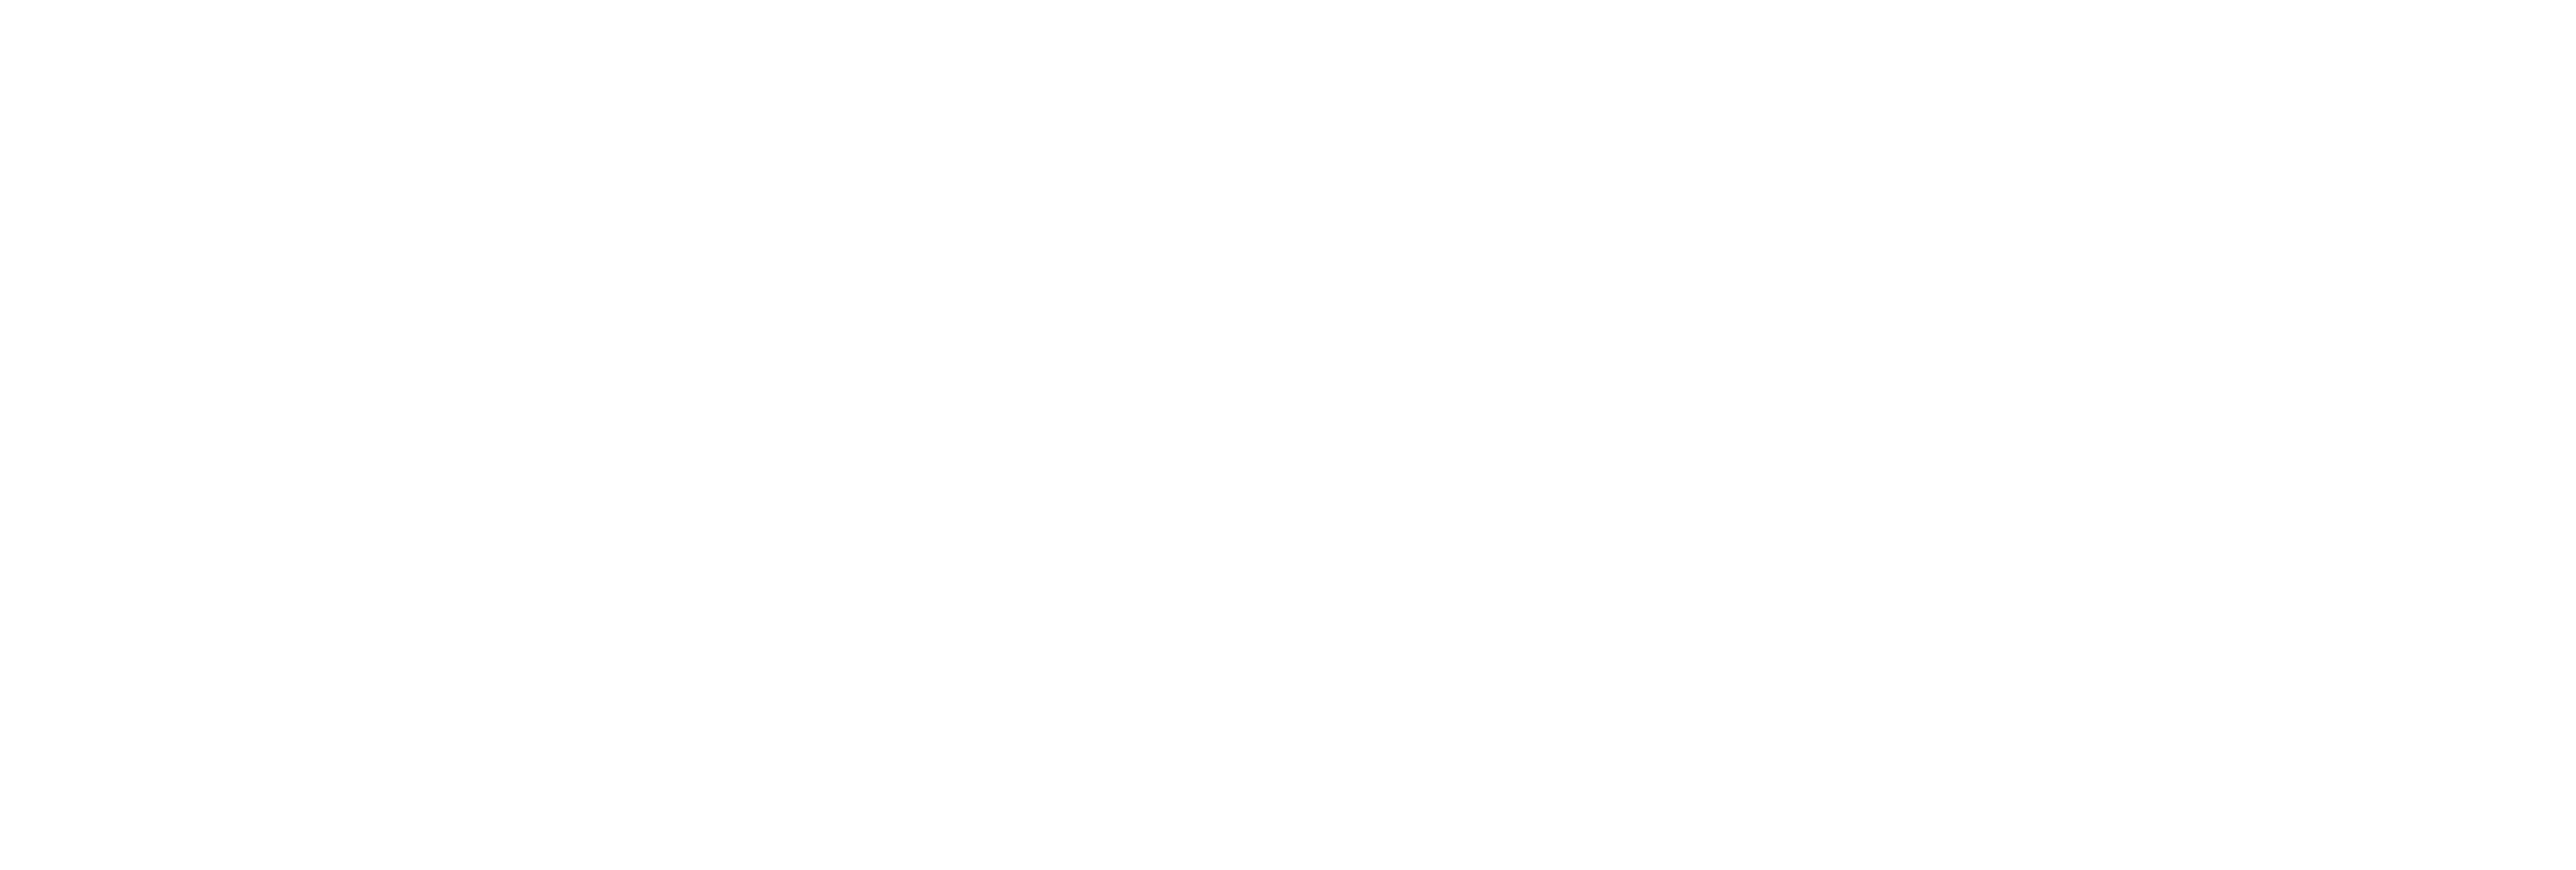 AniCura ImaVet Referencia Veterinaria logo